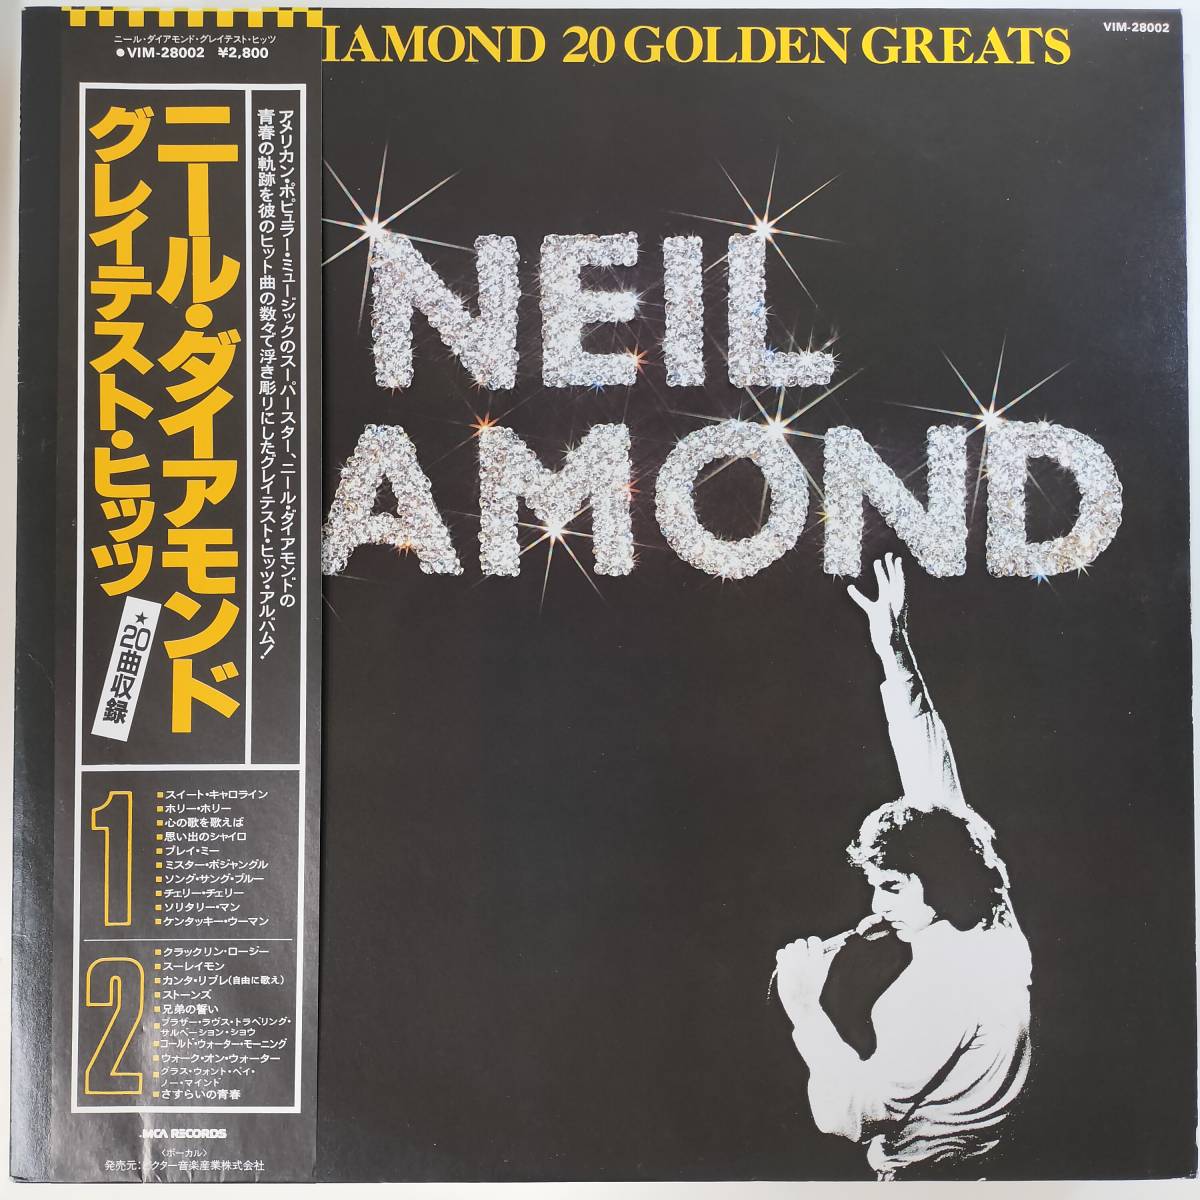 ヤフオク! -「neil diamond」(レコード) の落札相場・落札価格